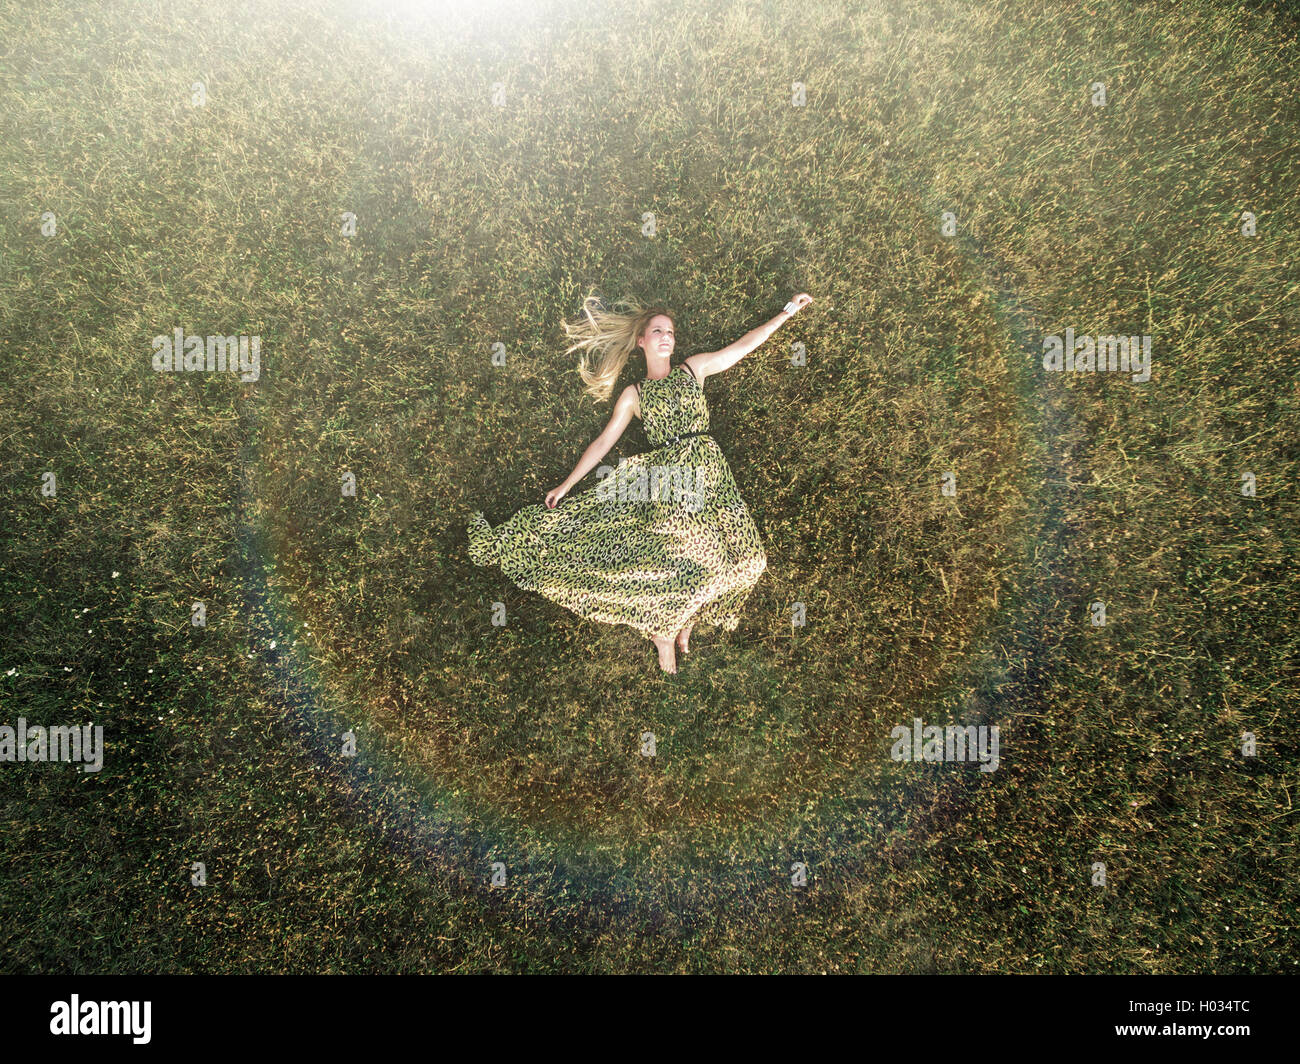 Luftaufnahme der junge Frau in einem grünen Kleid legen Sie sich auf eine Wiese. Post mit Polaroid-Filter verarbeitet. Stockfoto